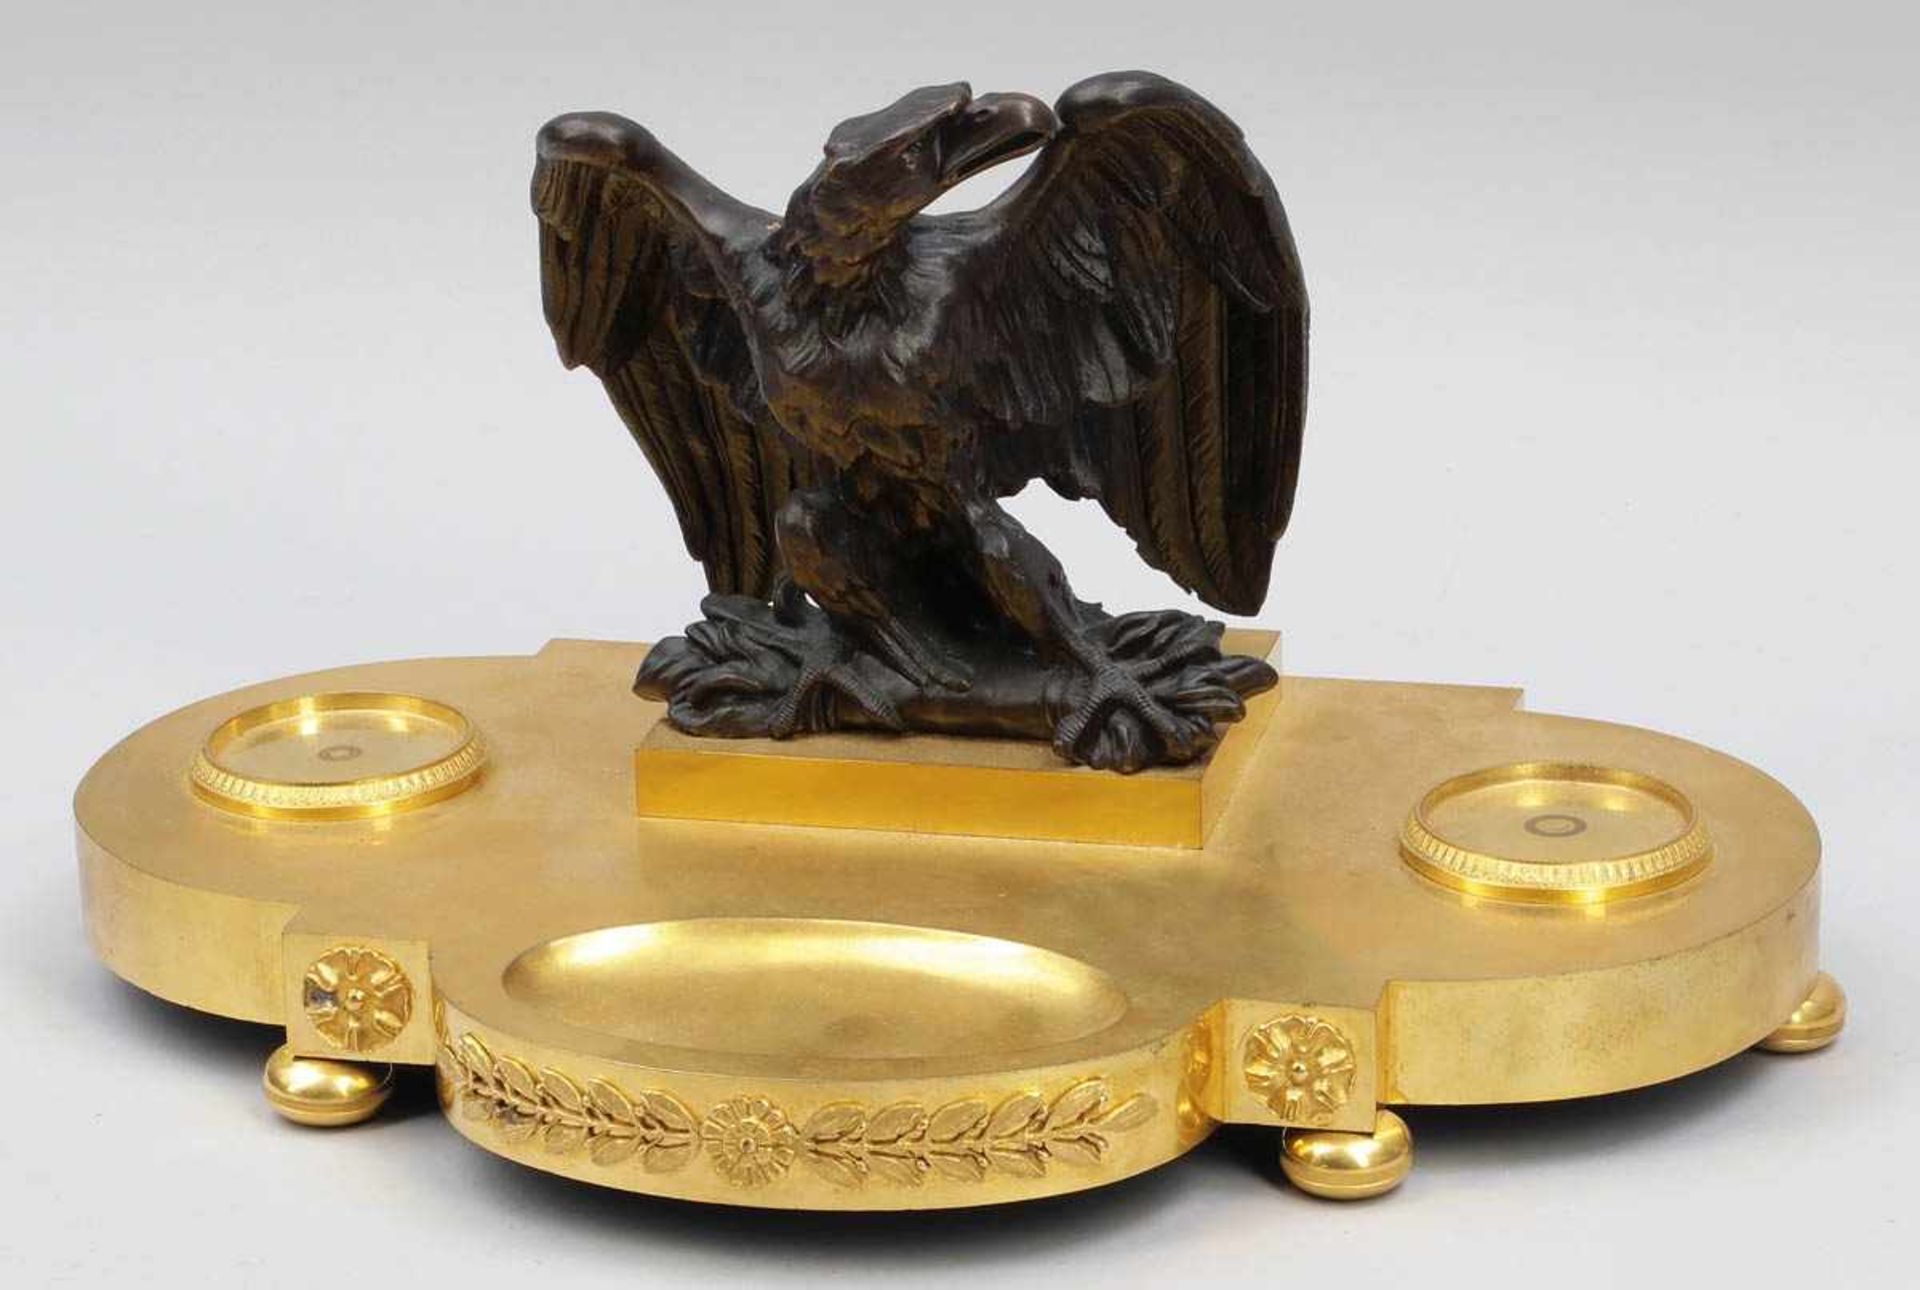 Schreibablage mit Adler Frankreich, um 1810. Bronze, feuervergoldet. 28 x 45 x 30 cm. Auf